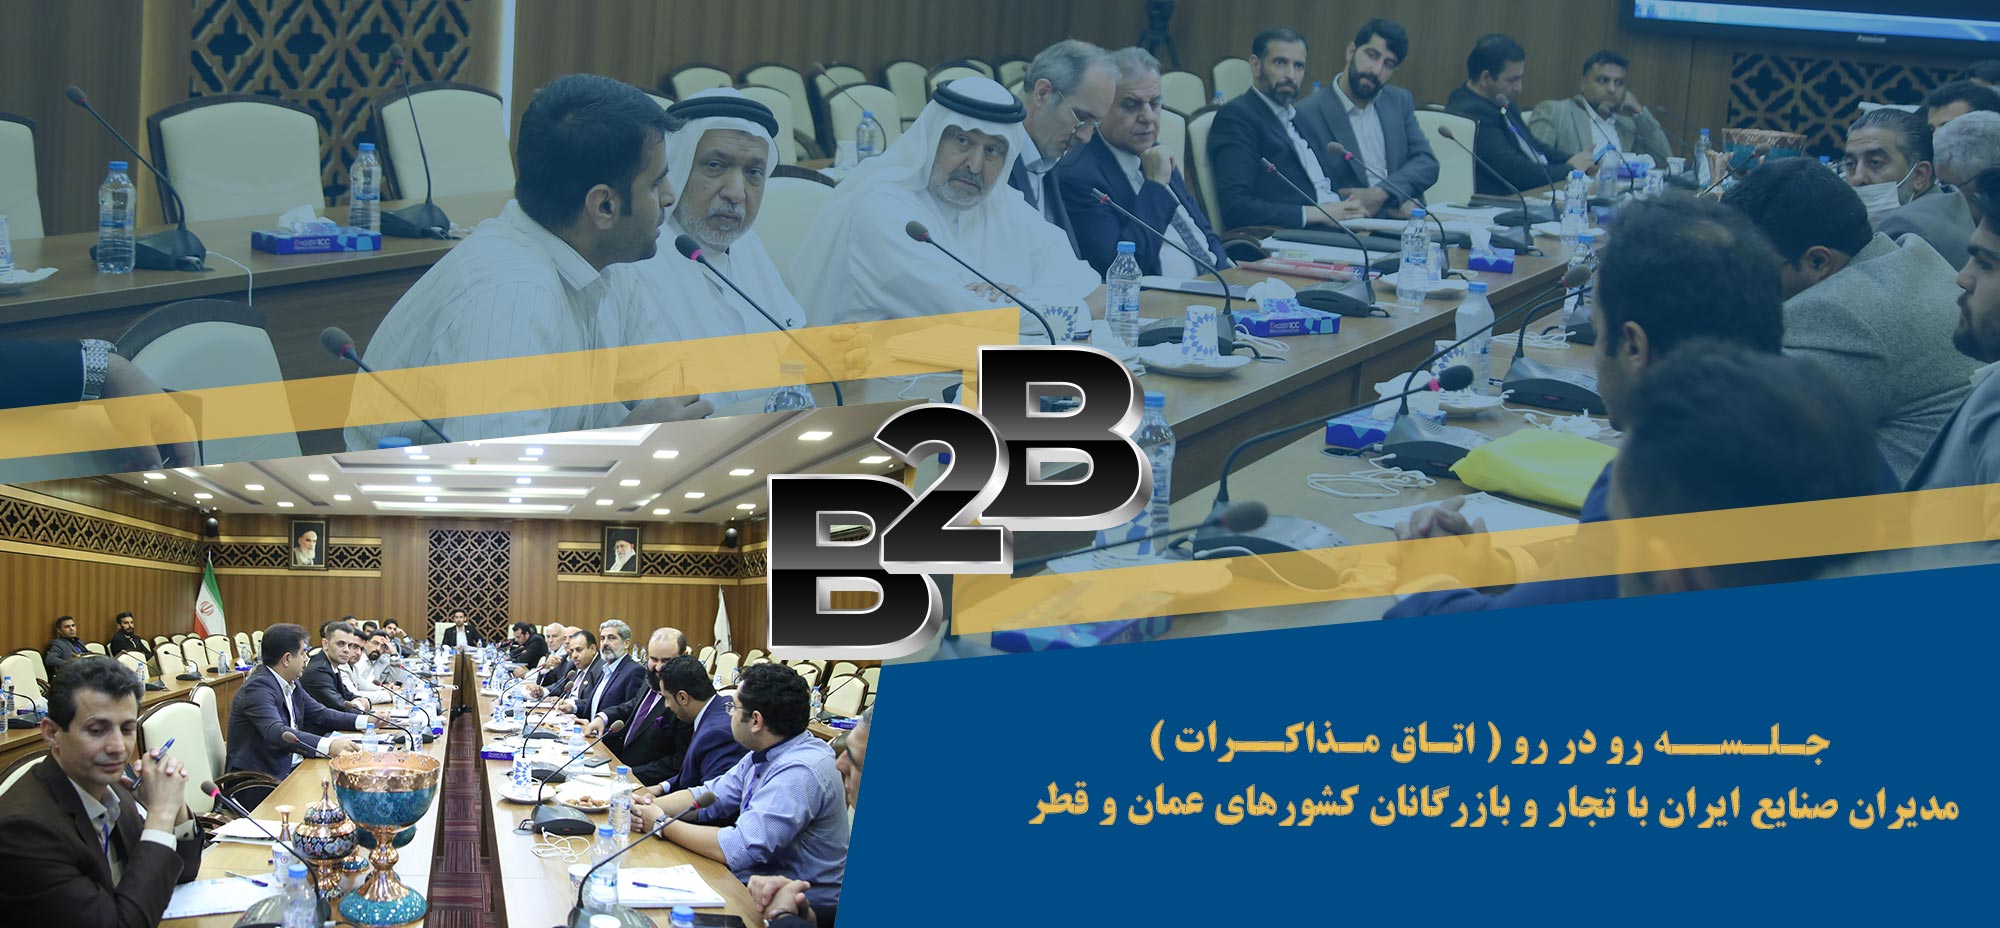 برگزاری جلسه رو در رو (اتاق مذاکرات)مدیران صنایع ایران با تجار و بازرگانان کشور های عمان و قطر